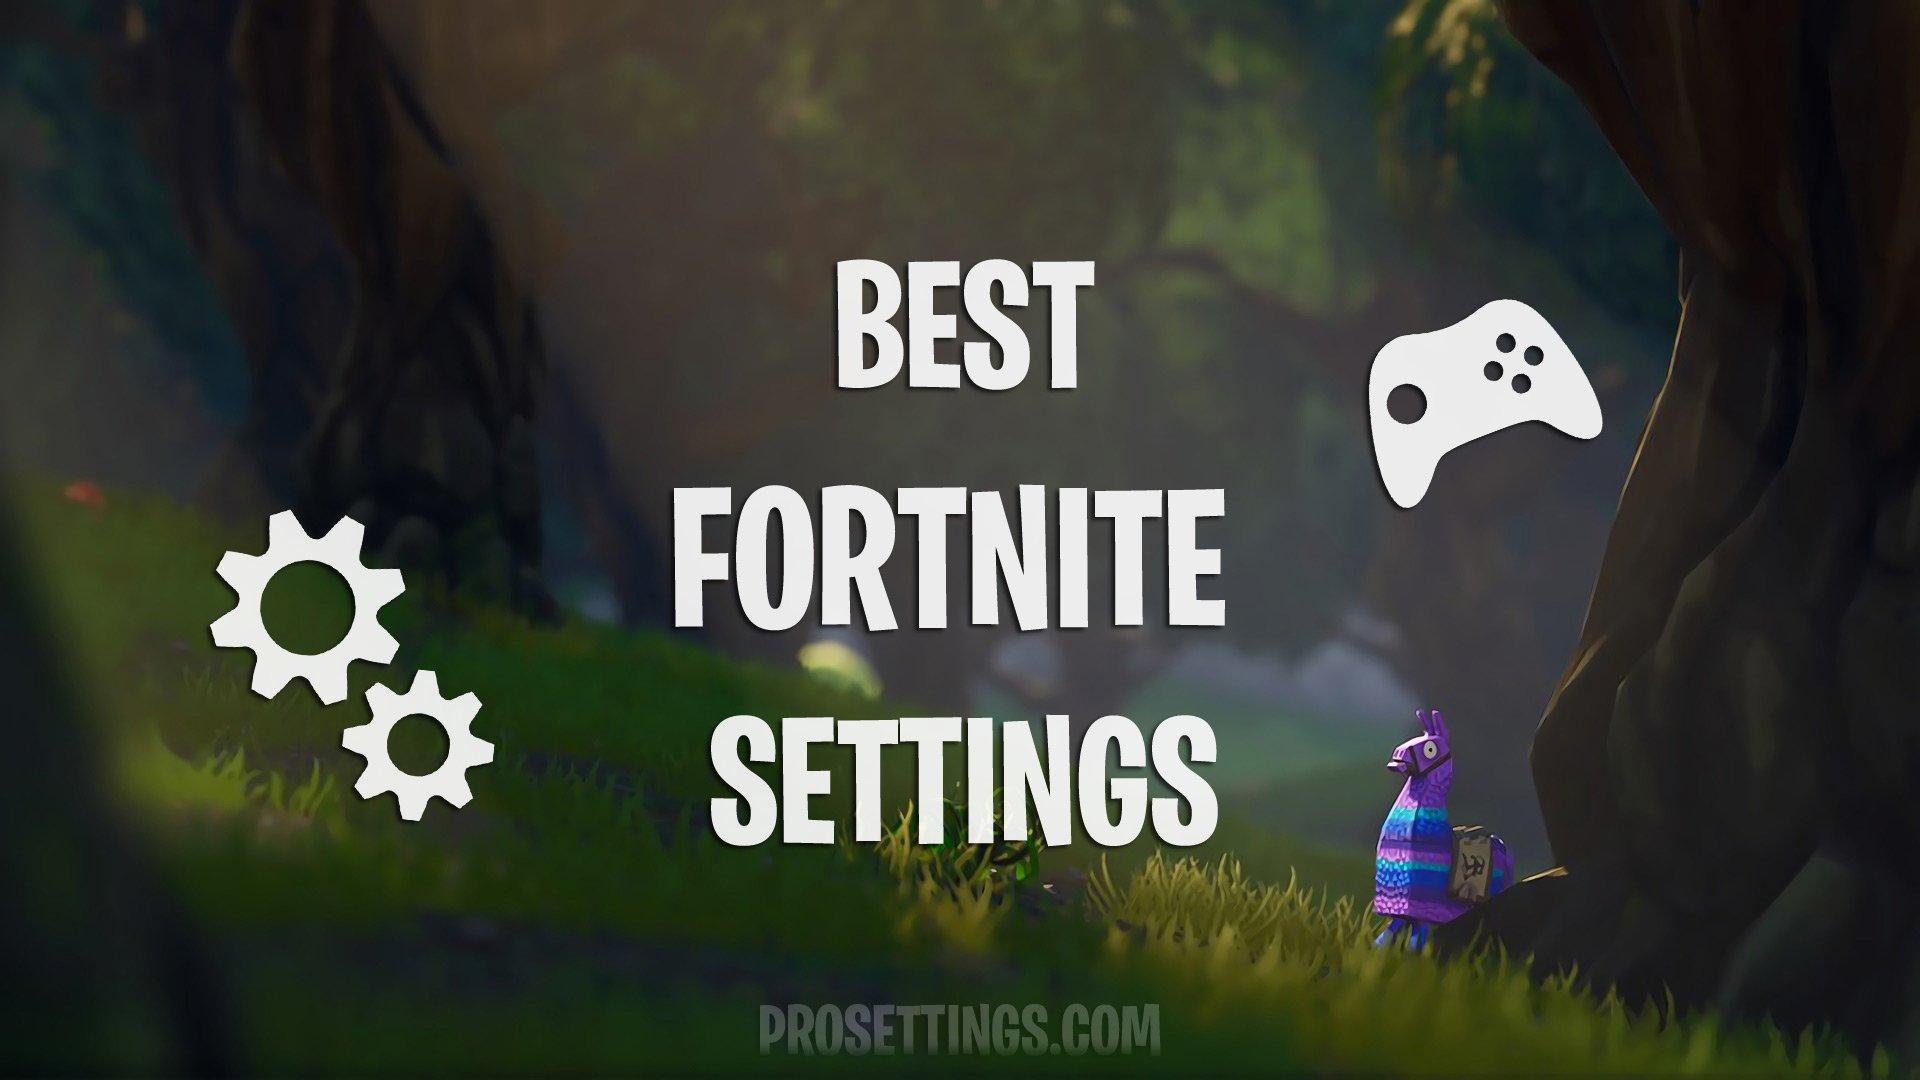 best fortnite settings - fortnite win screen generator season 7